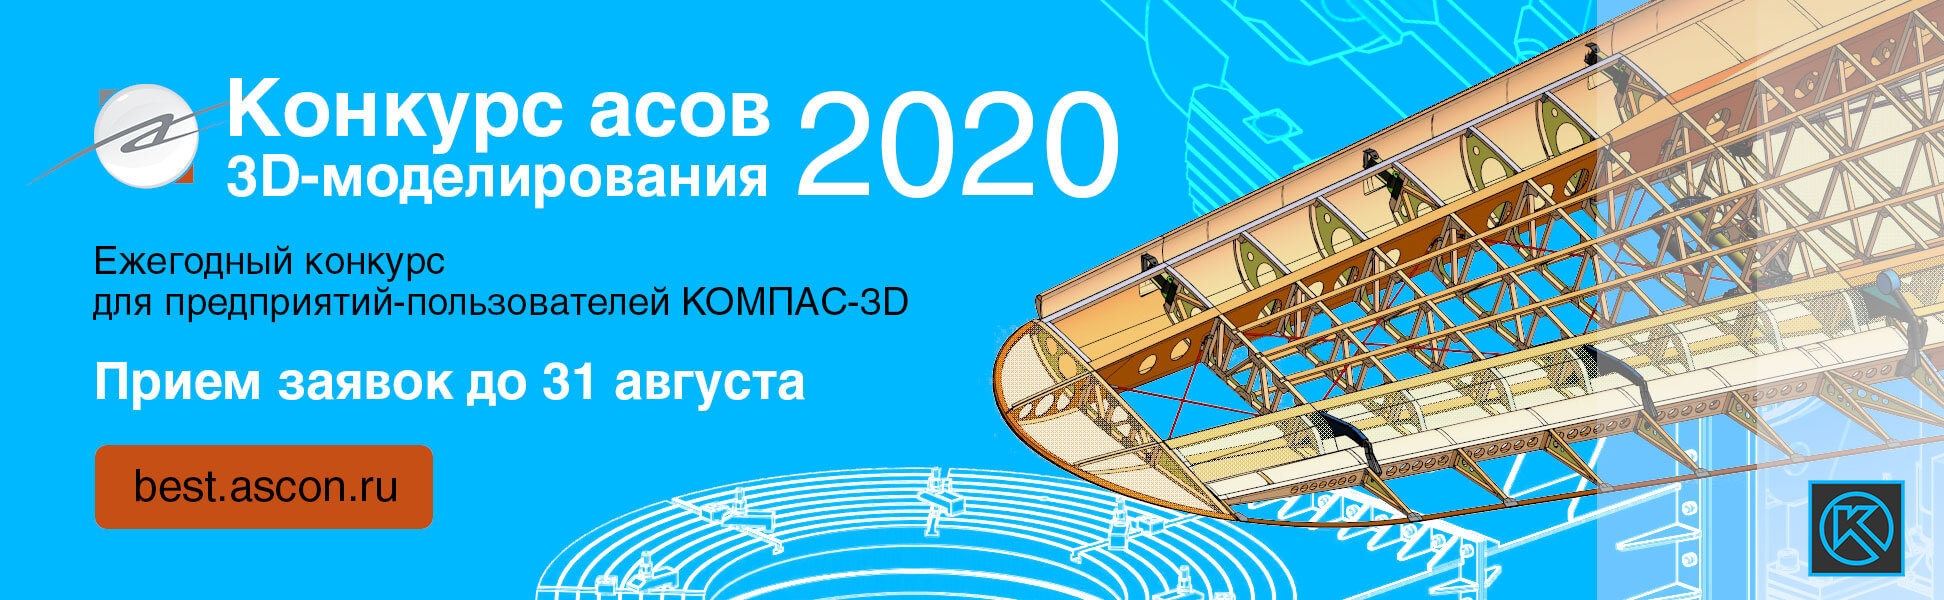 Асы 3D-моделирования 2020